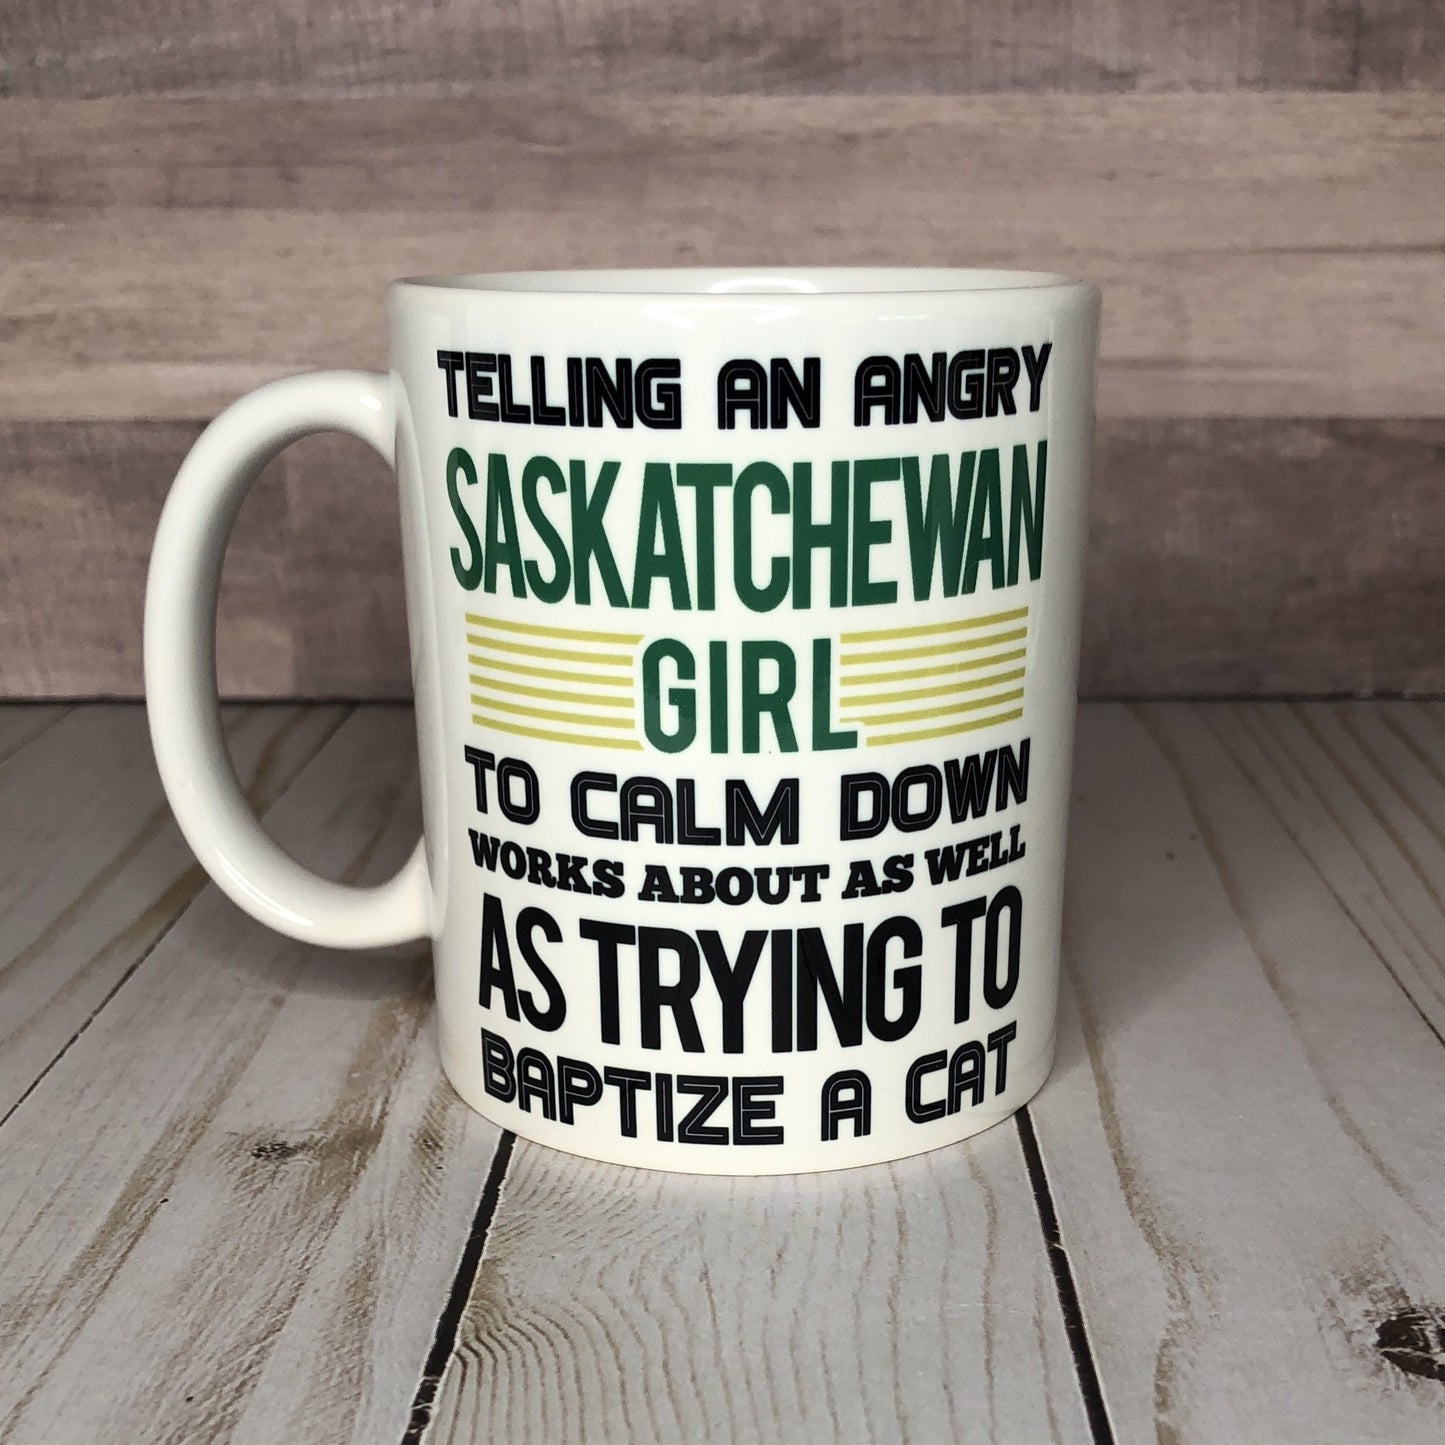 Saskatchewan Girl Mug